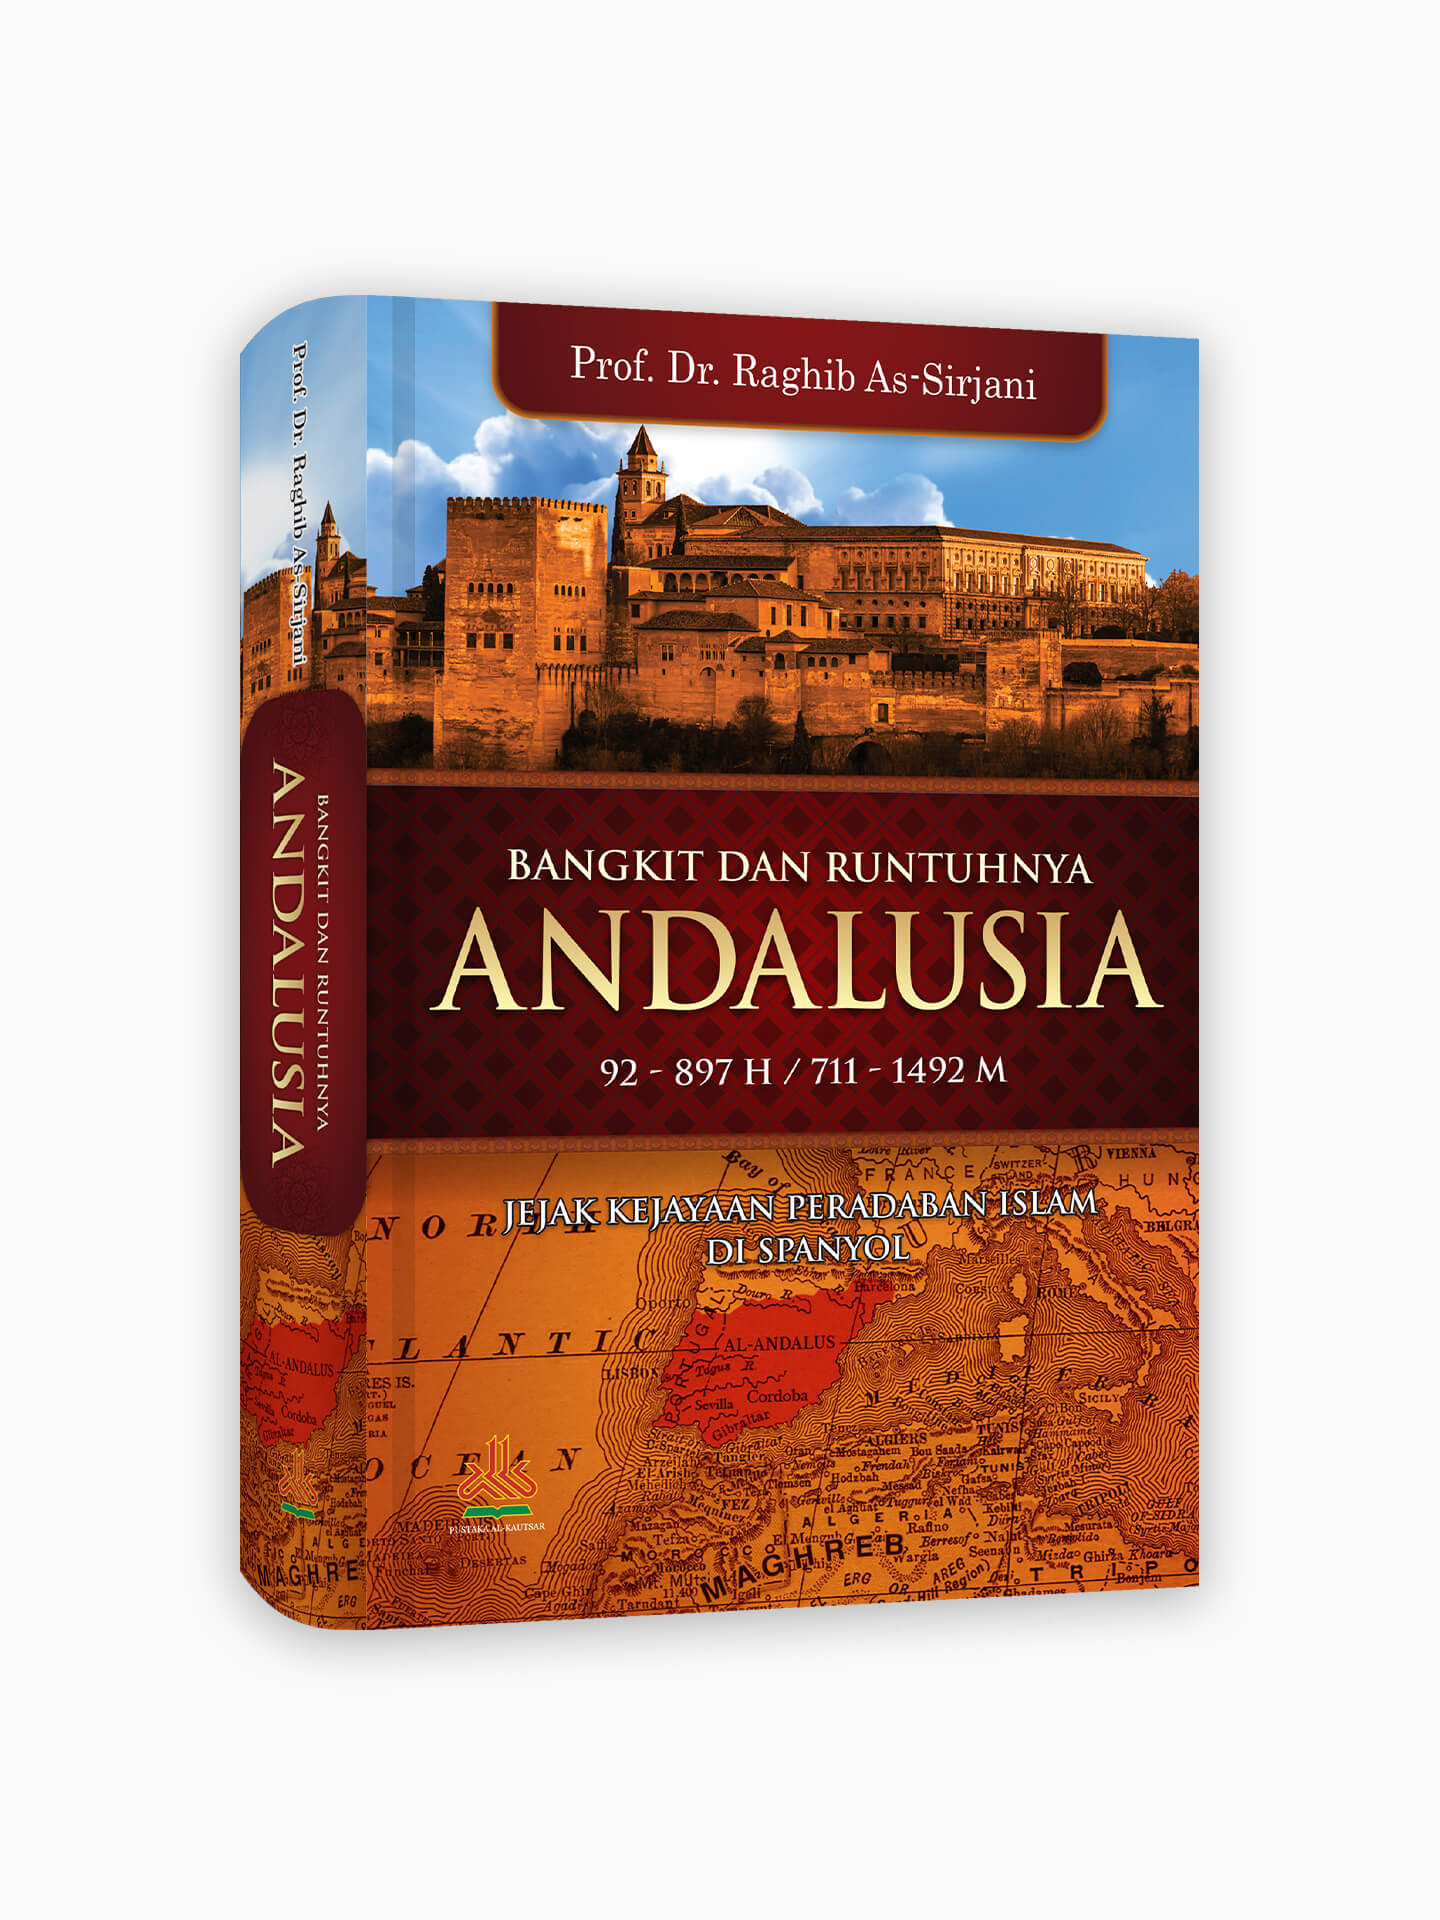 Bangkit dan Runtuhnya Andalusia